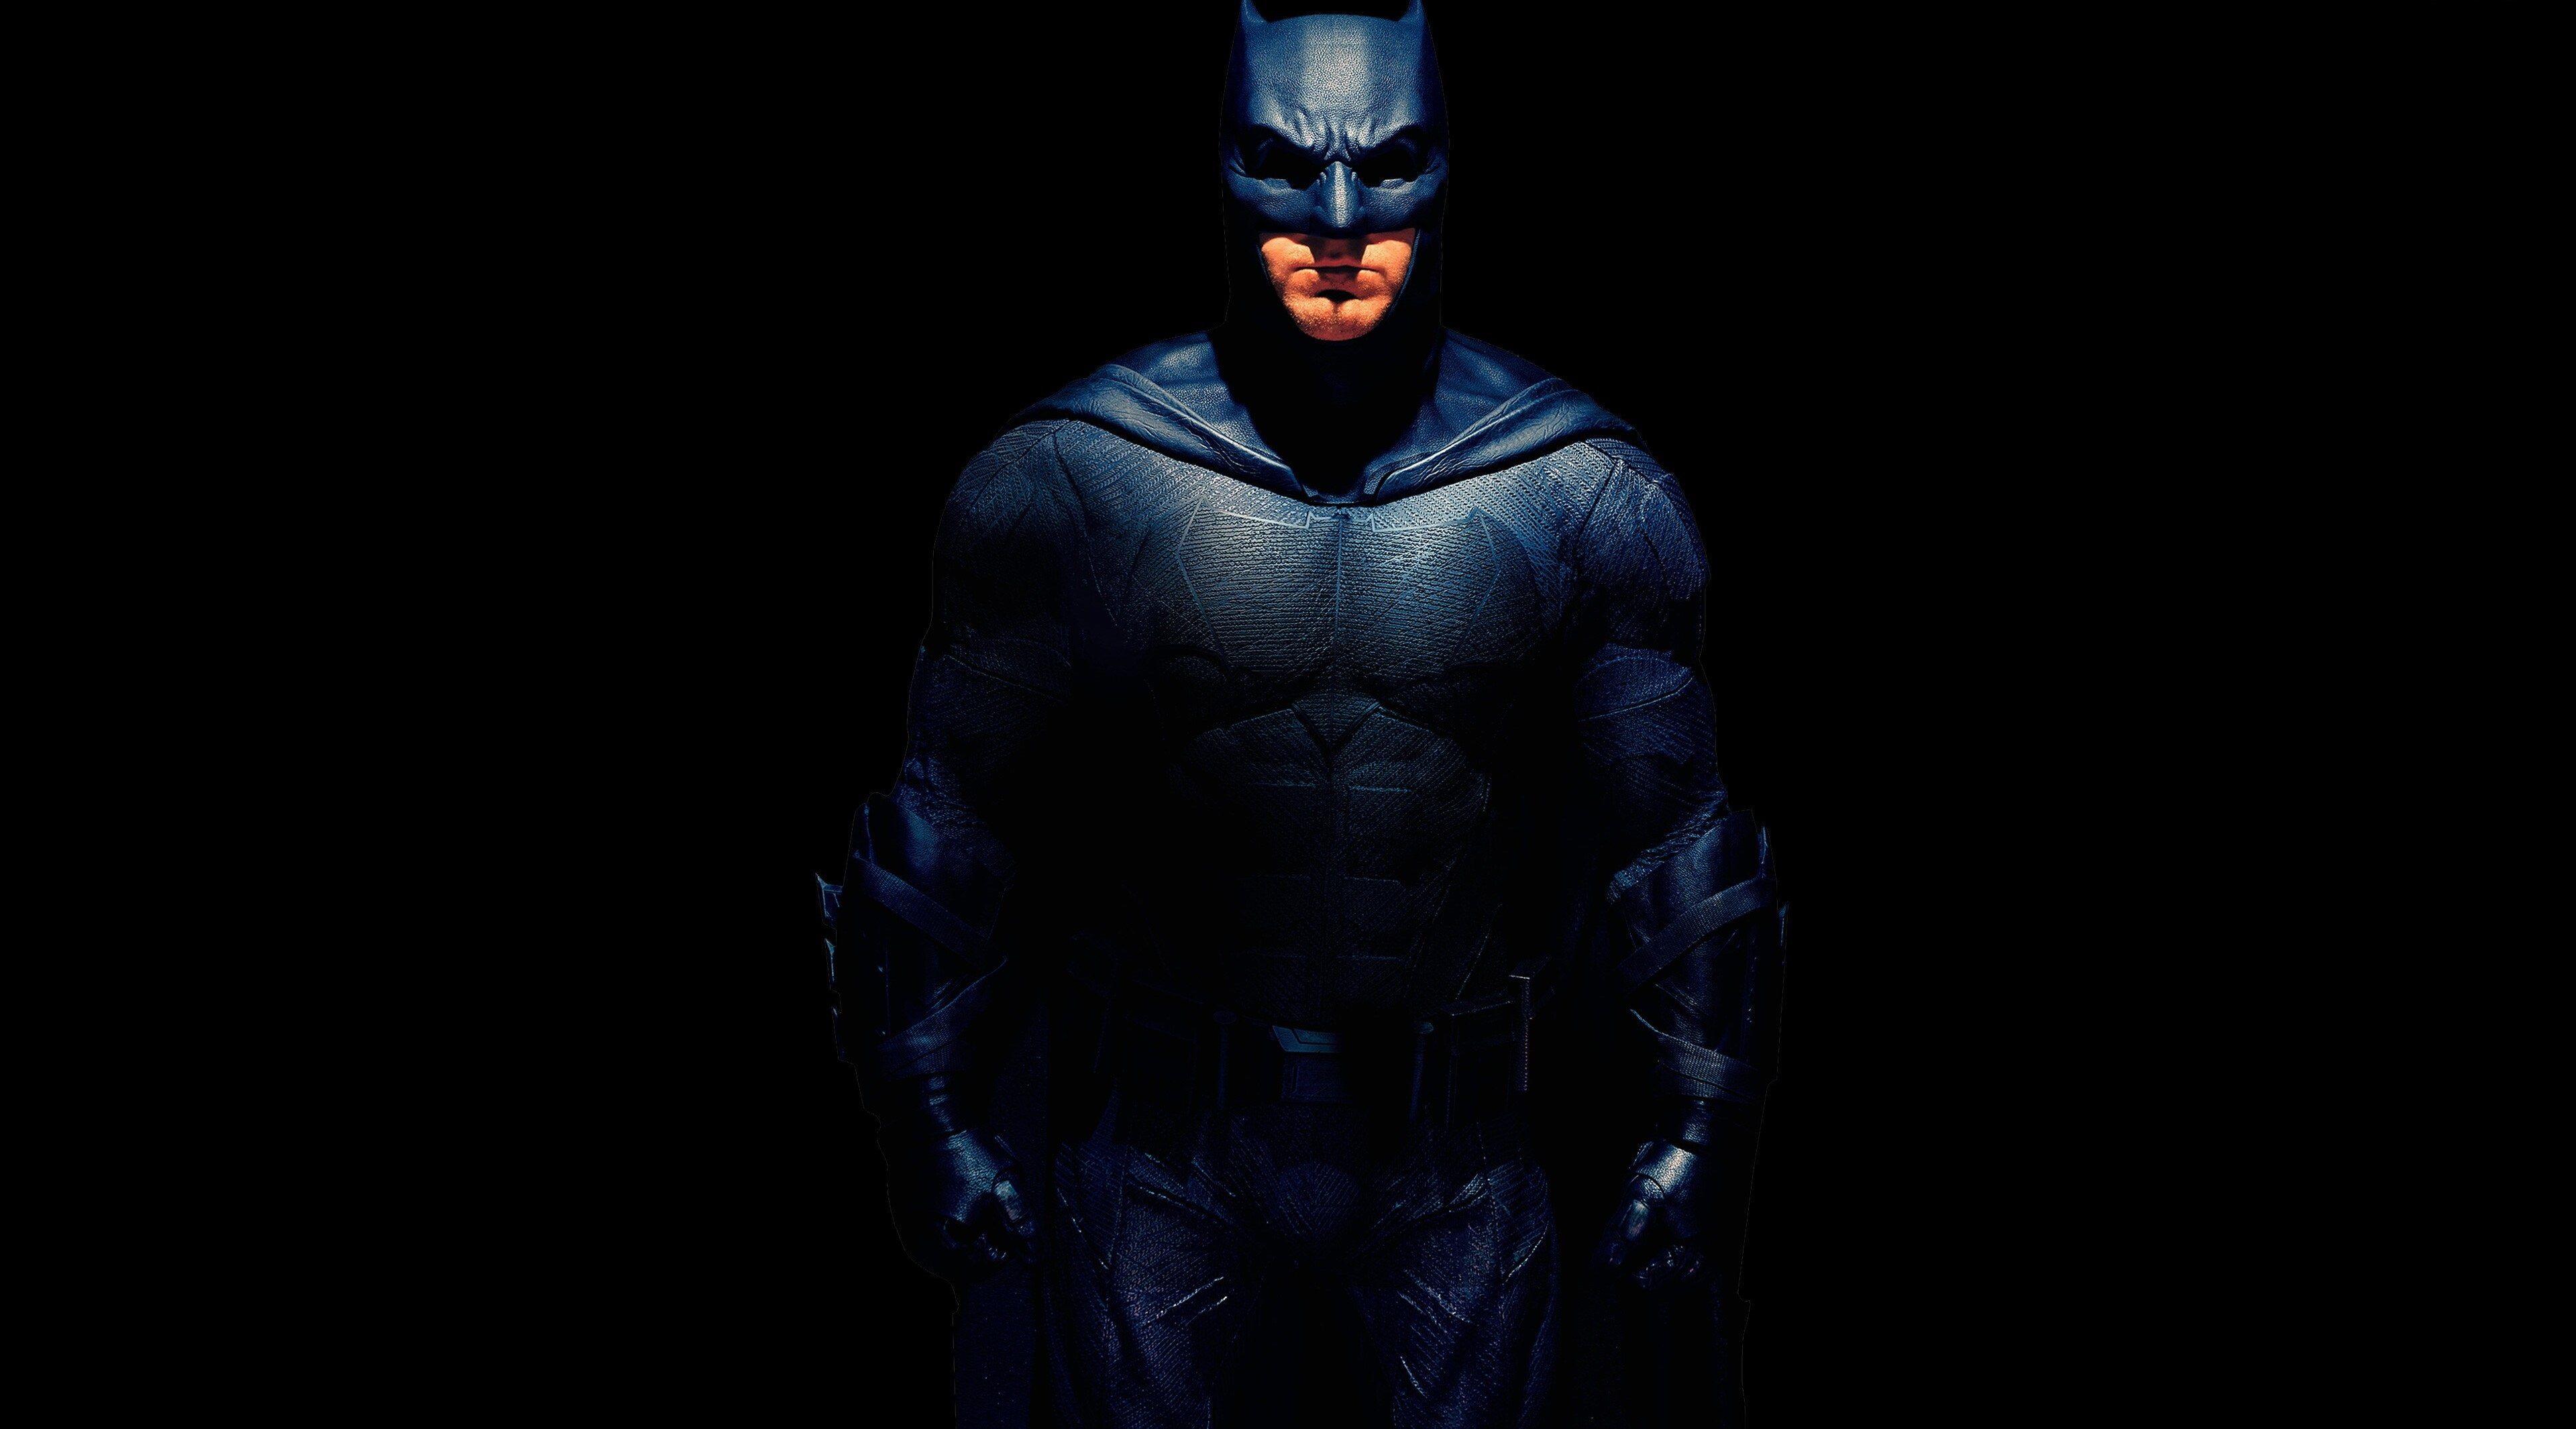 justice league 4k wallpaper image. Batman, Justice league, Batman illustration